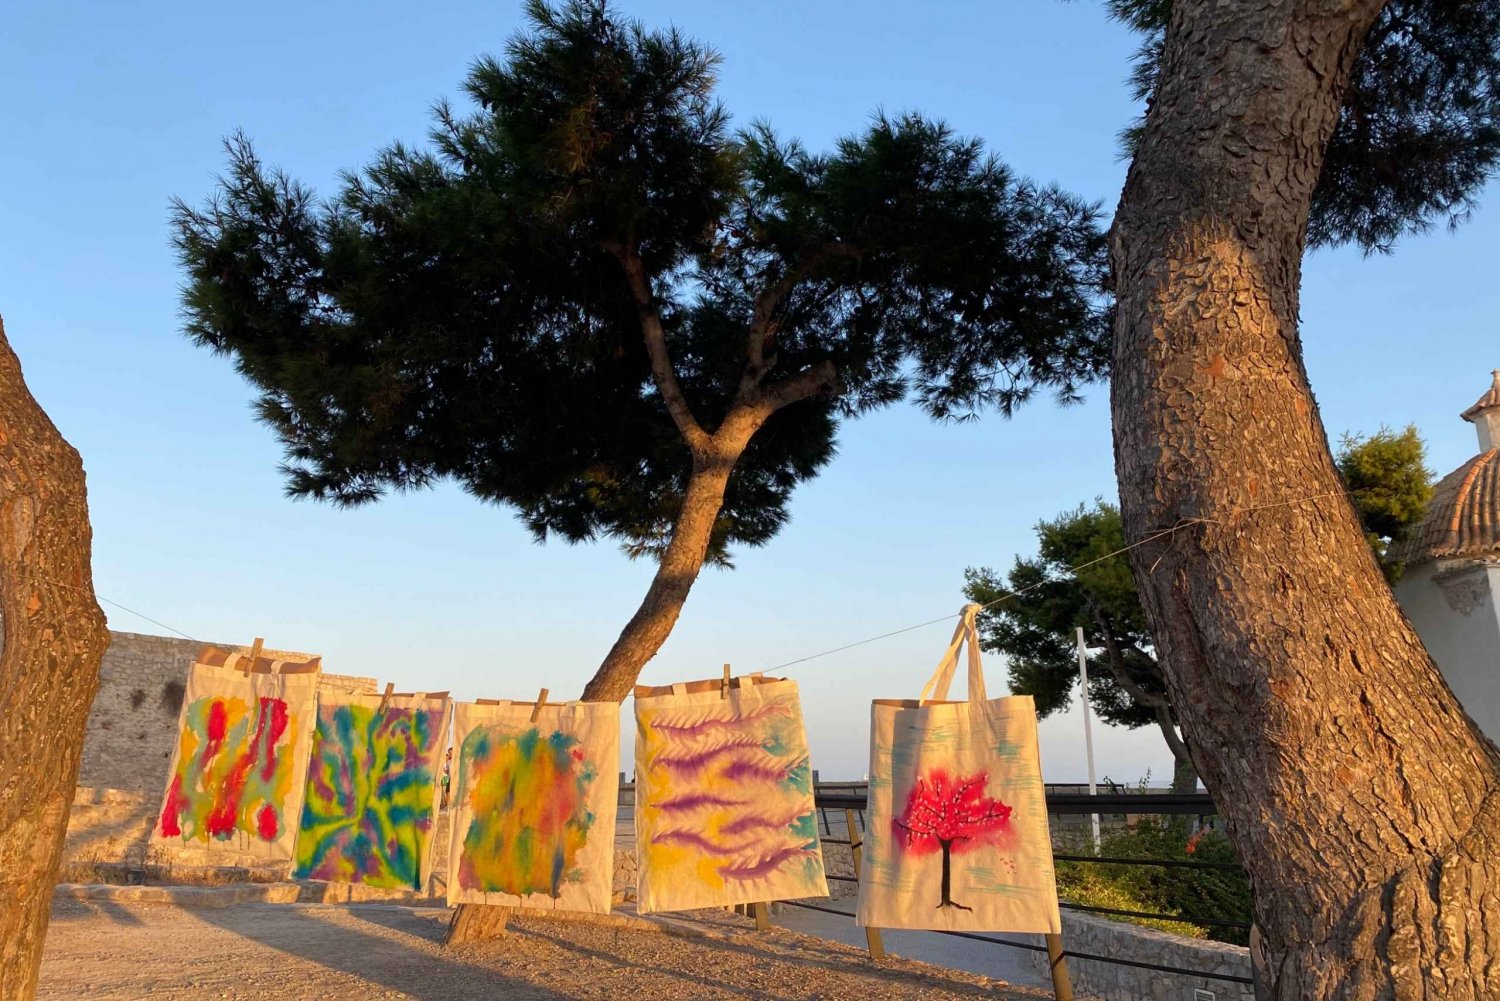 Ibiza: Byvandring i Dalt Vila med kunstverksted